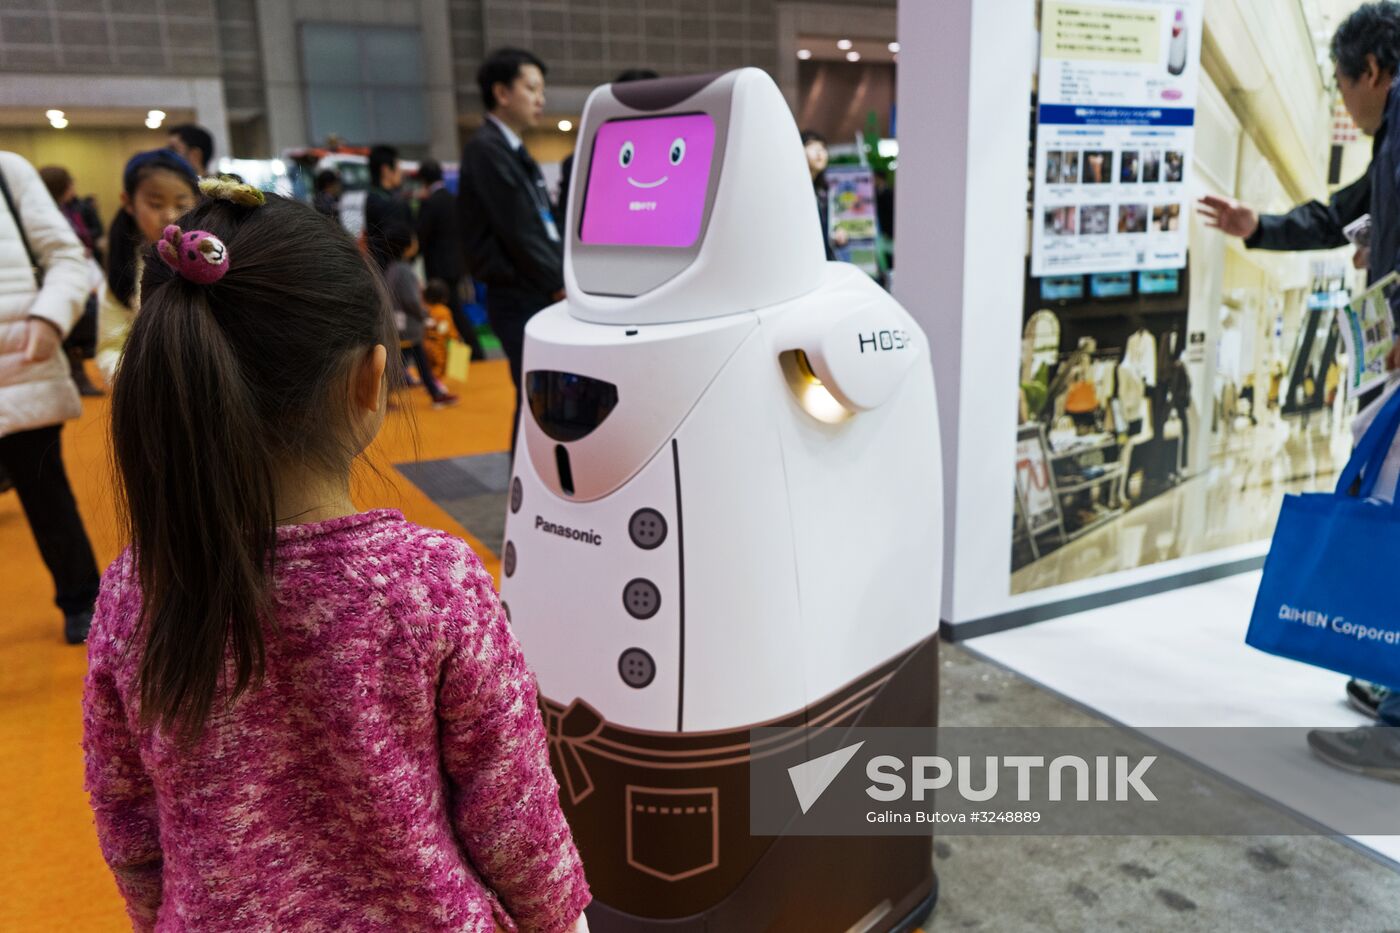 IREX international robot exhibition in Tokyo